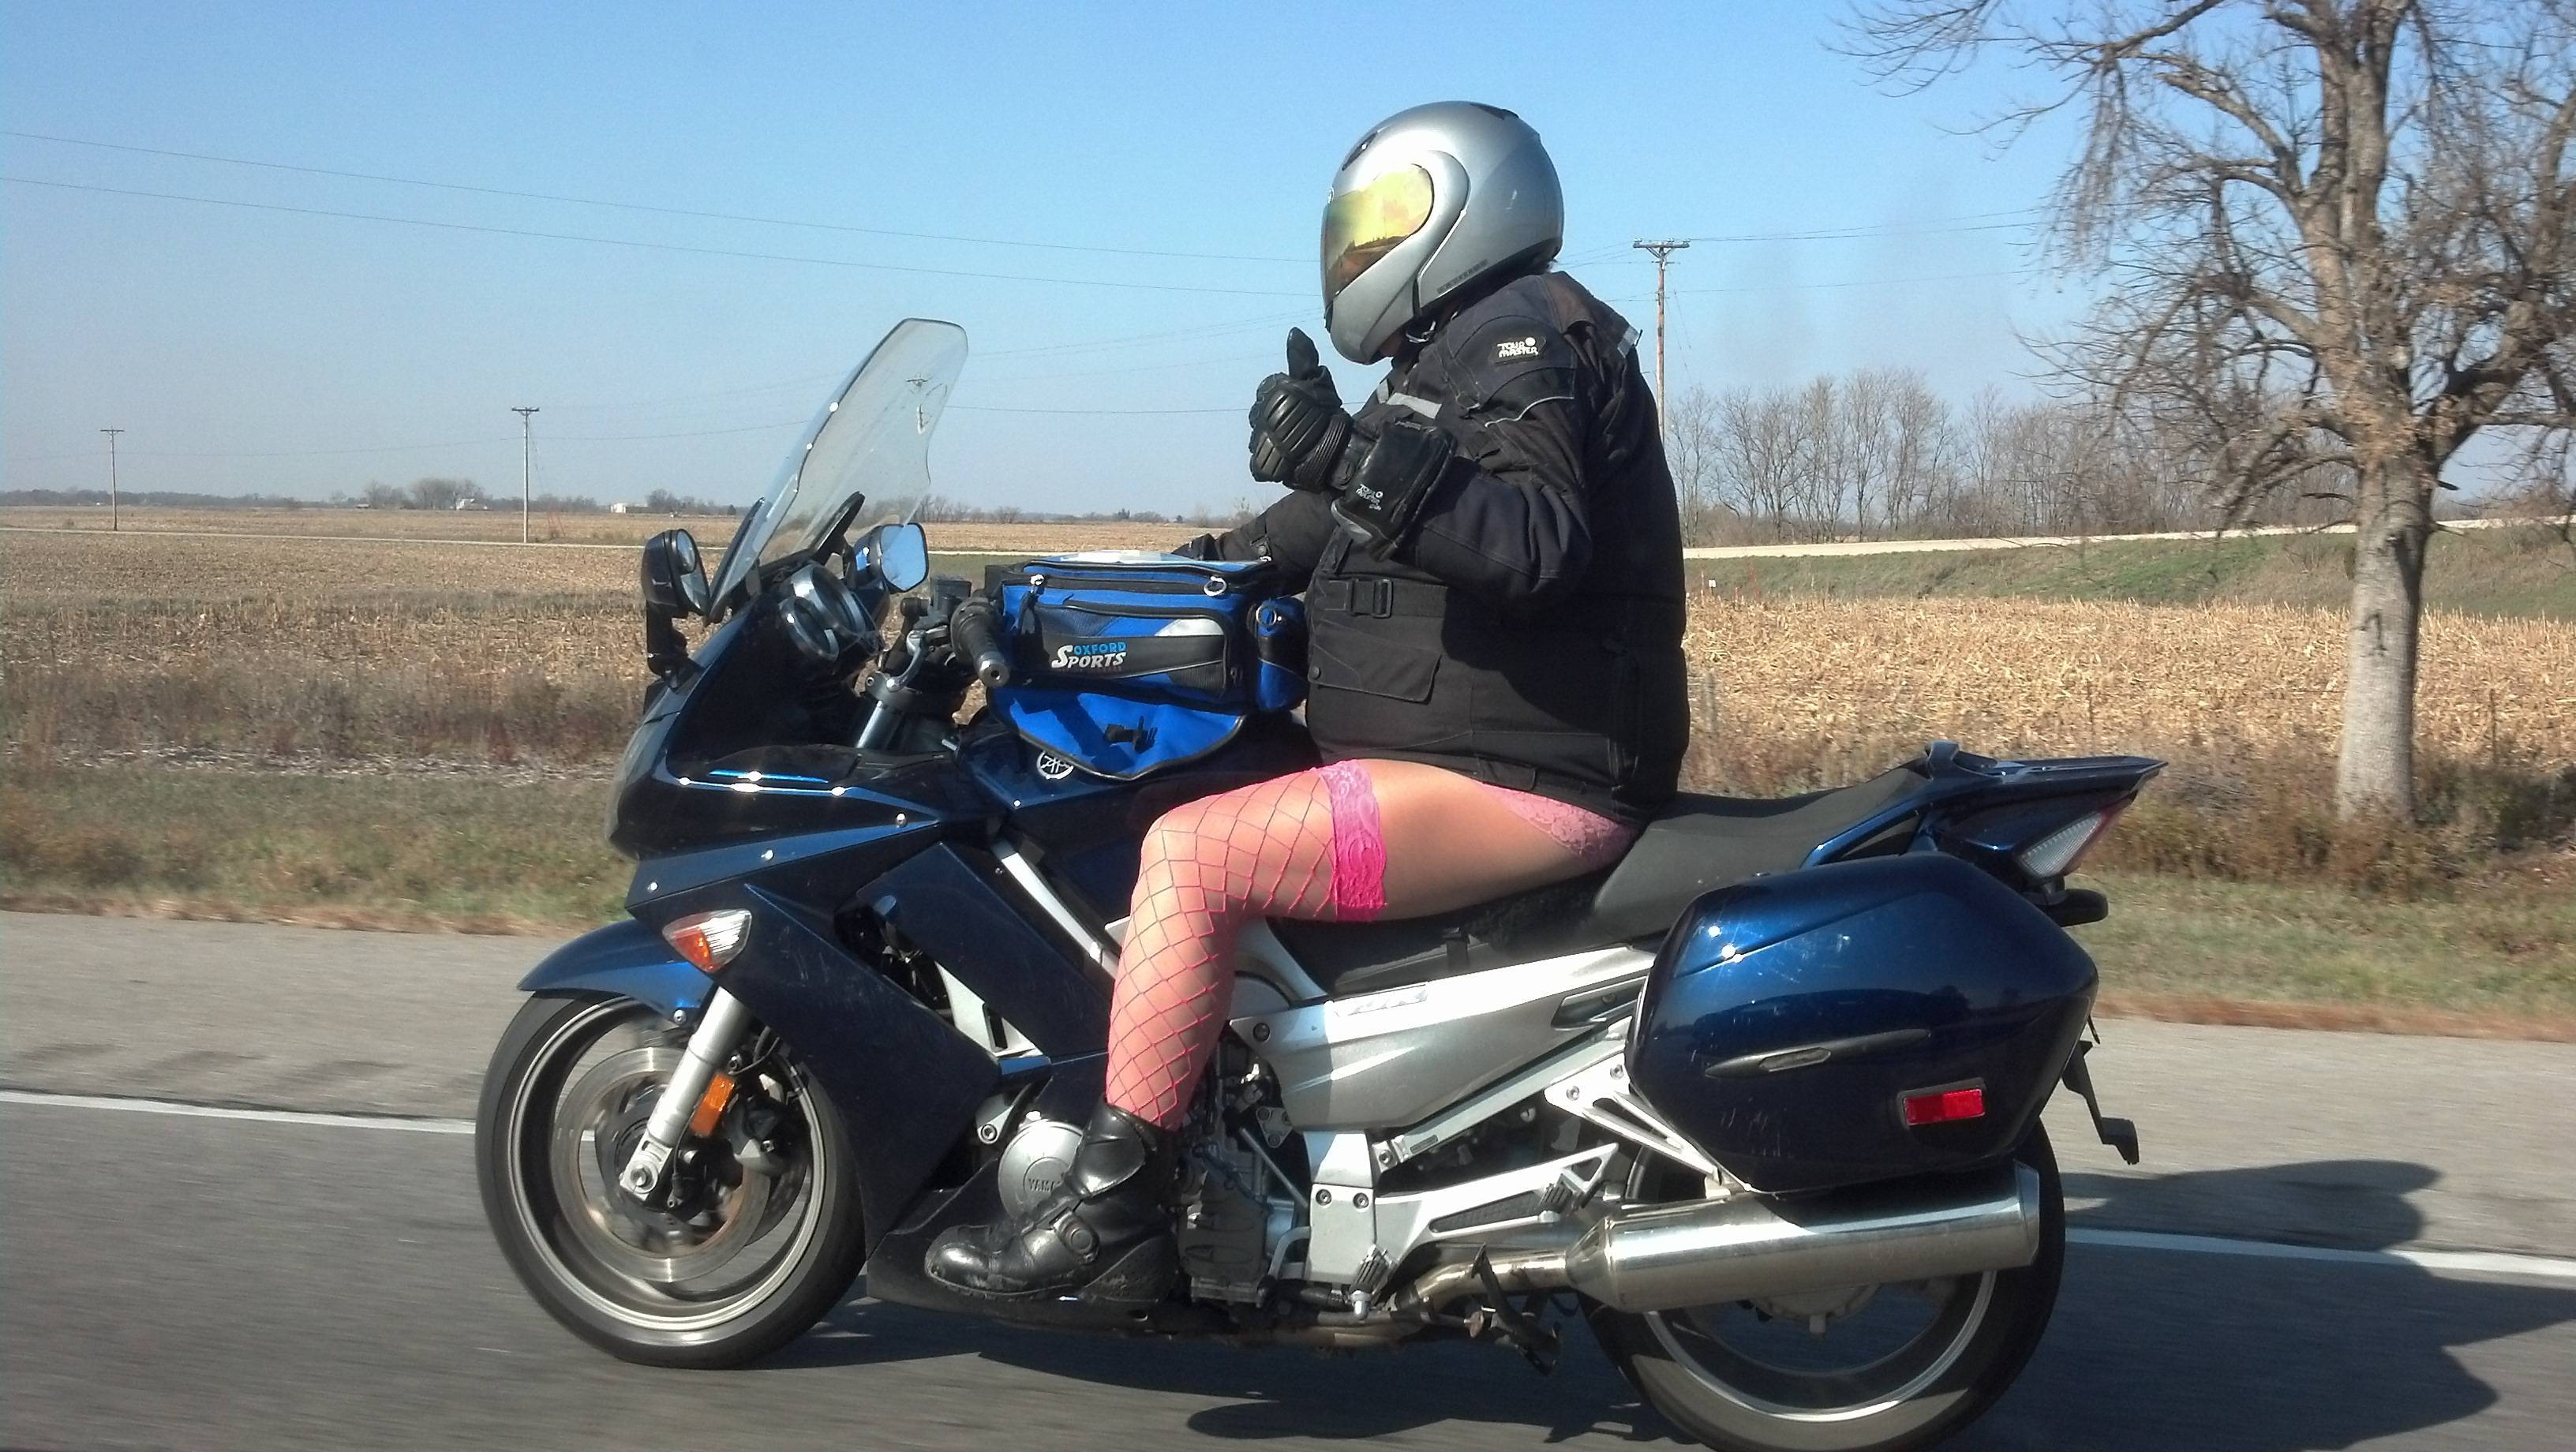 Ella reccomend Motorcyclist wearing pantyhose